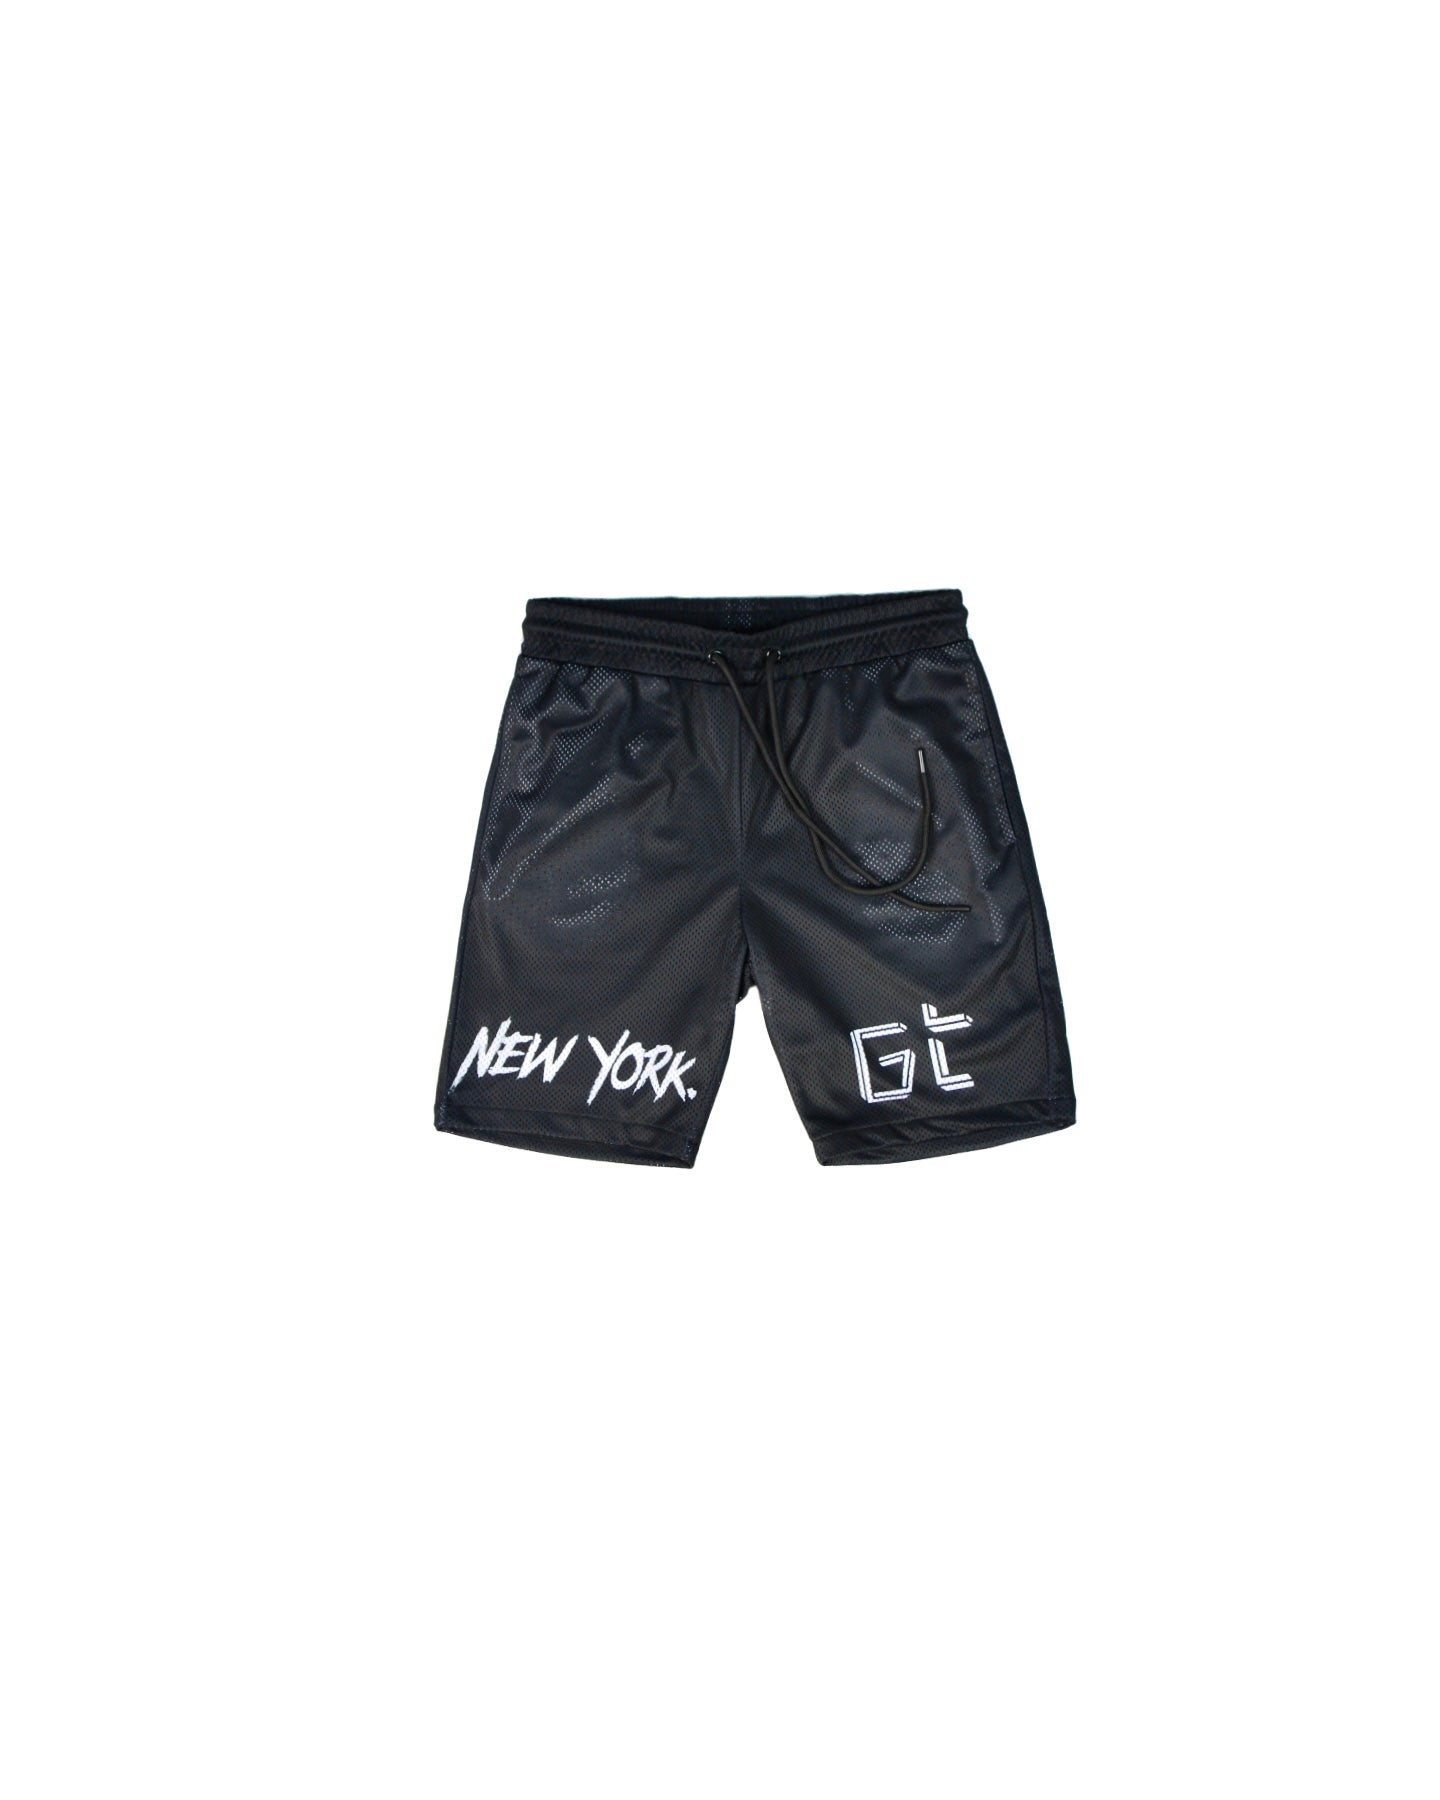 Black Mesh NY Shorts